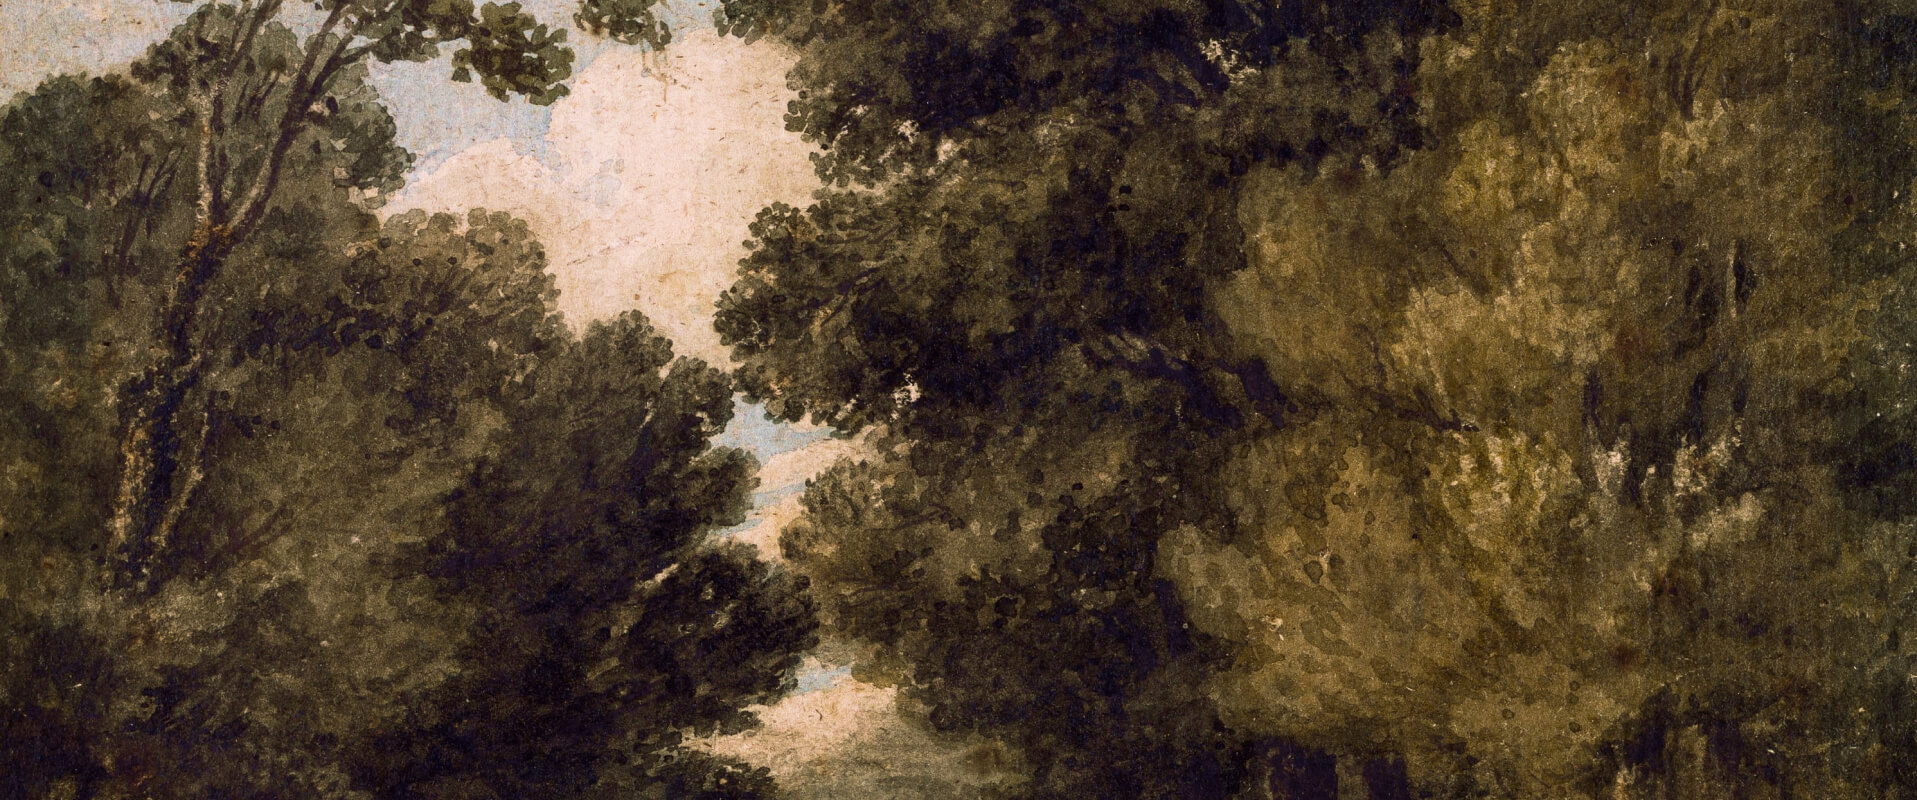 небо виднеется между деревьями